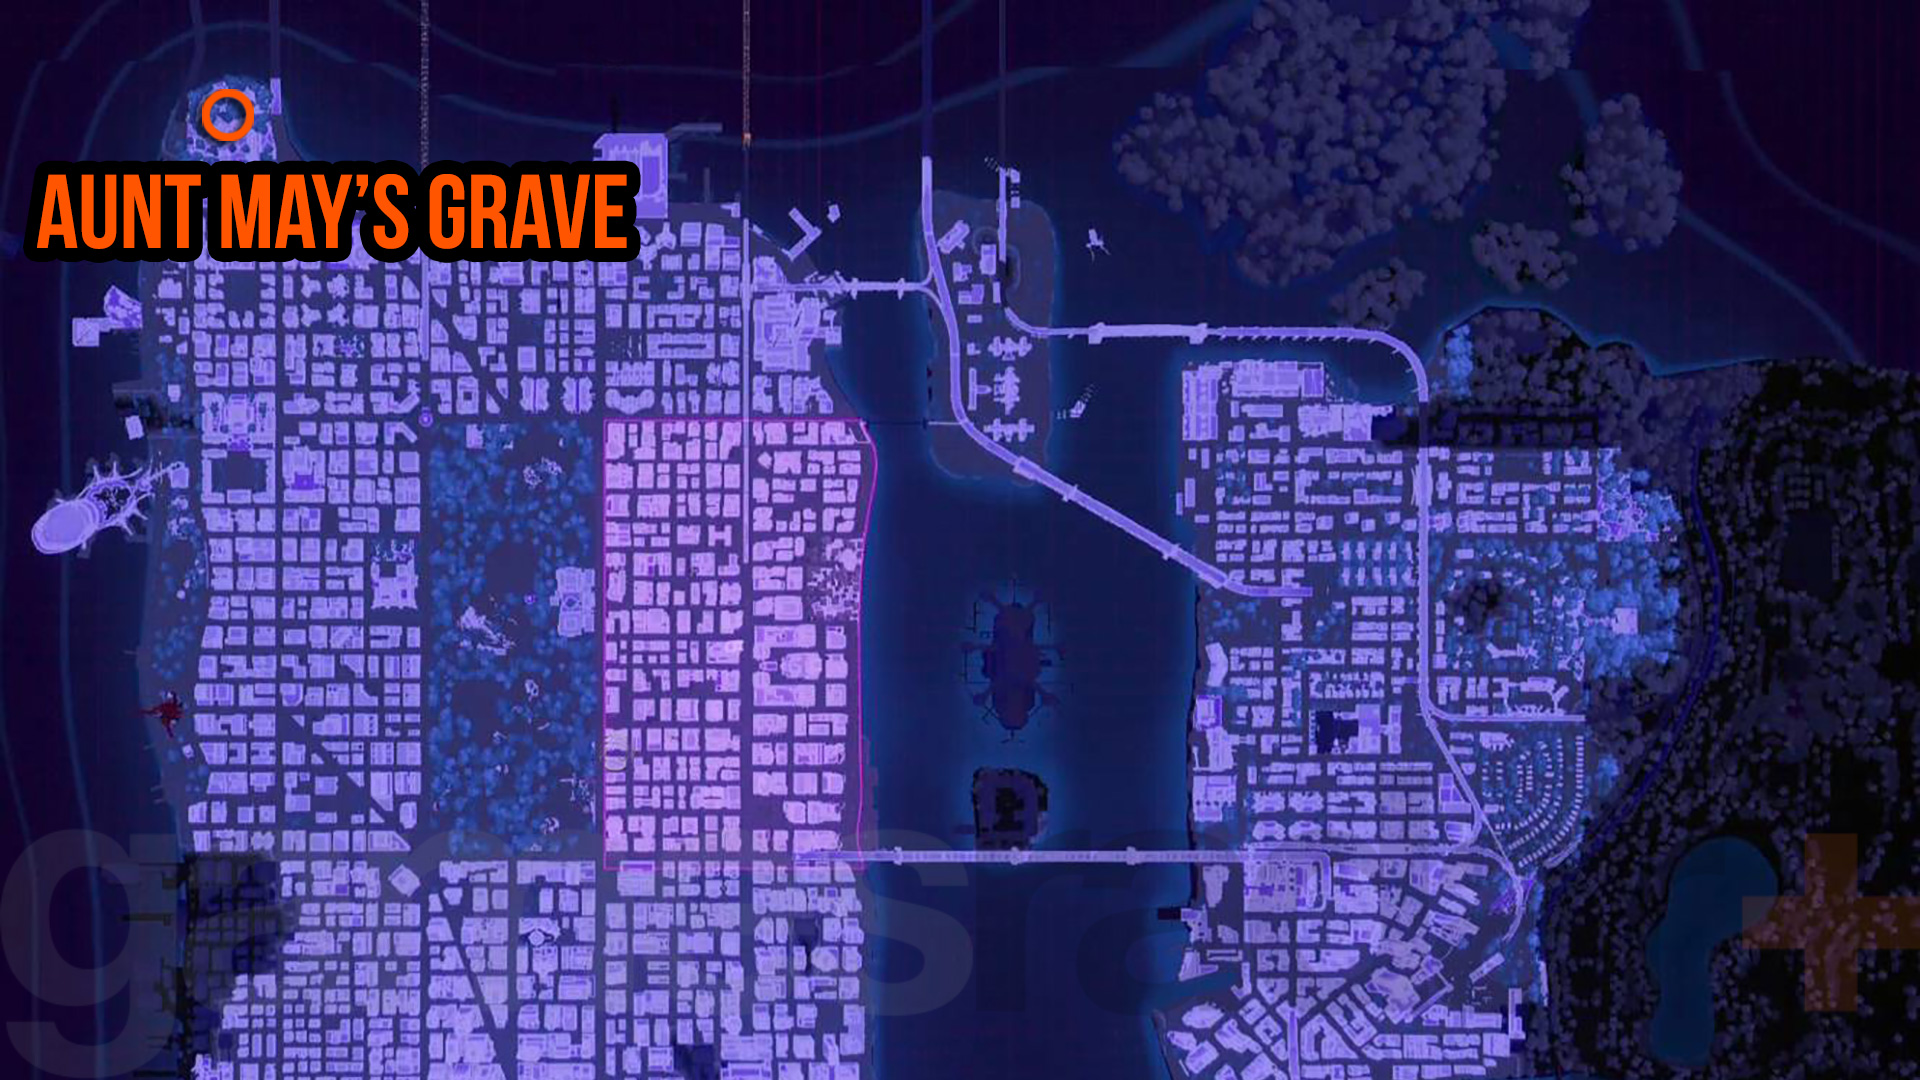 Spider-Man 2 Tante Mays grav - kart over gravens plassering